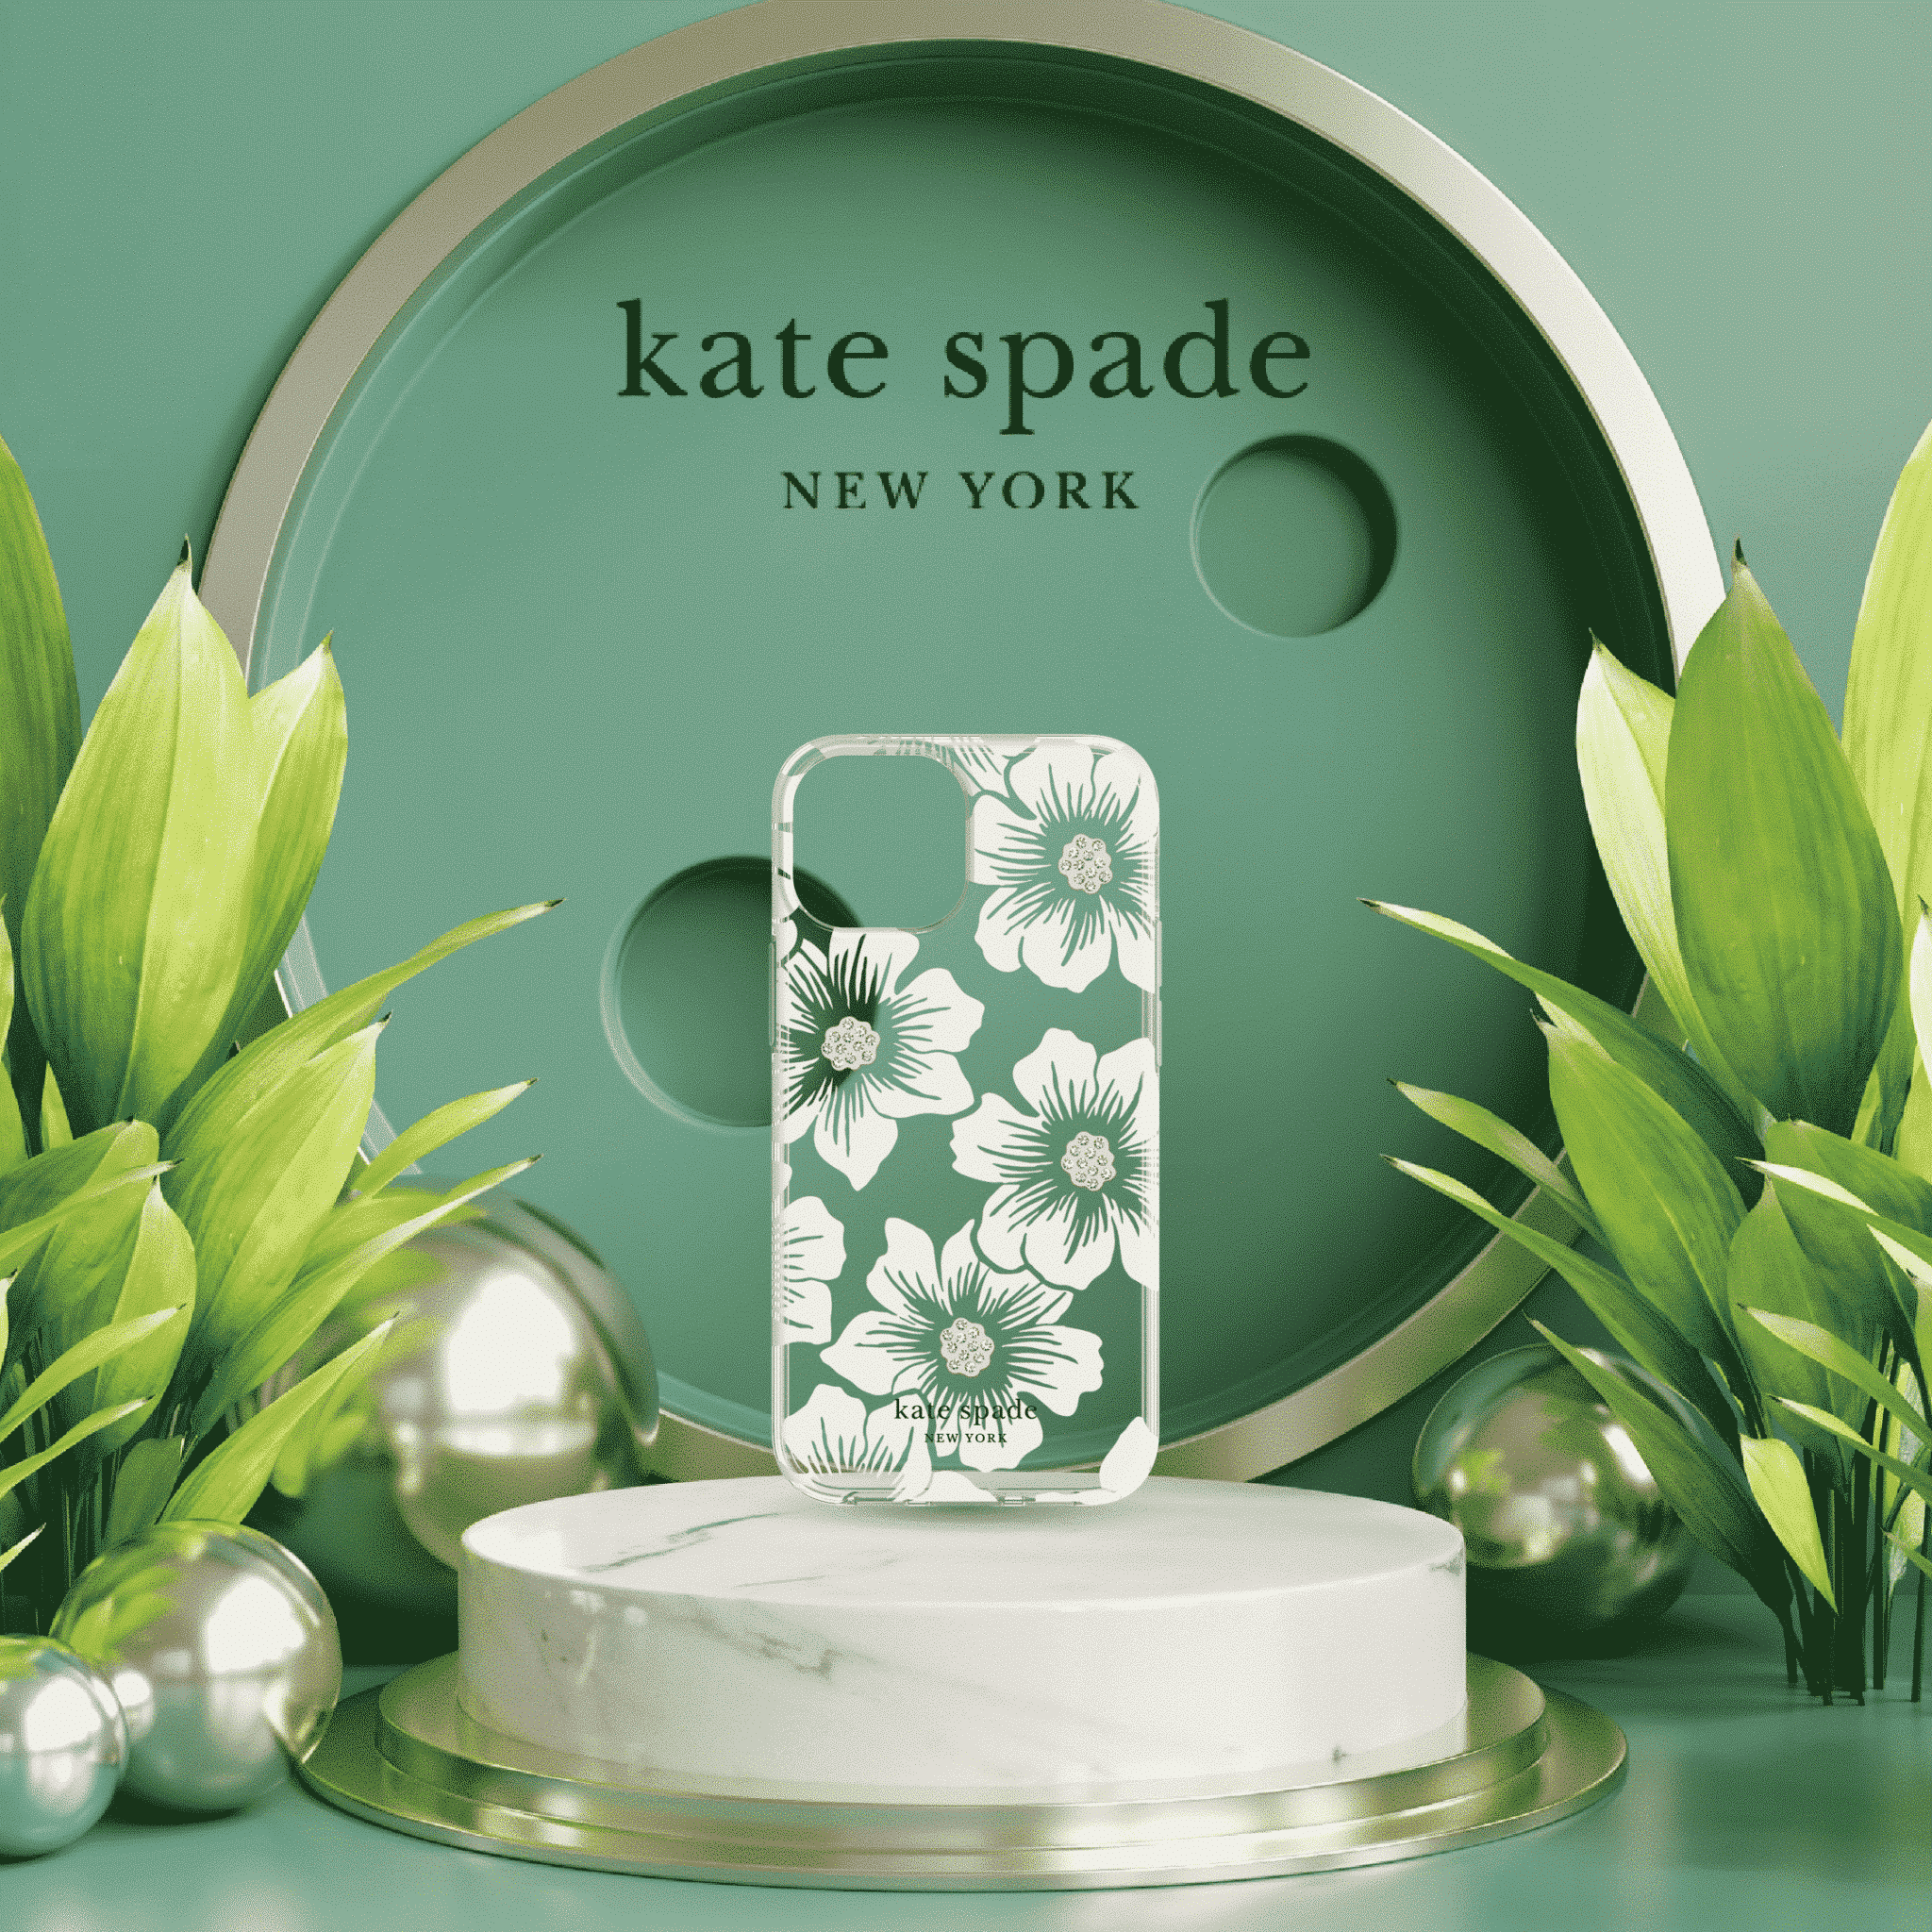 เคส Kate Spade New York รุ่น Protective Hardshell Case - iPhone 13 - Hollyhock Floral Clear